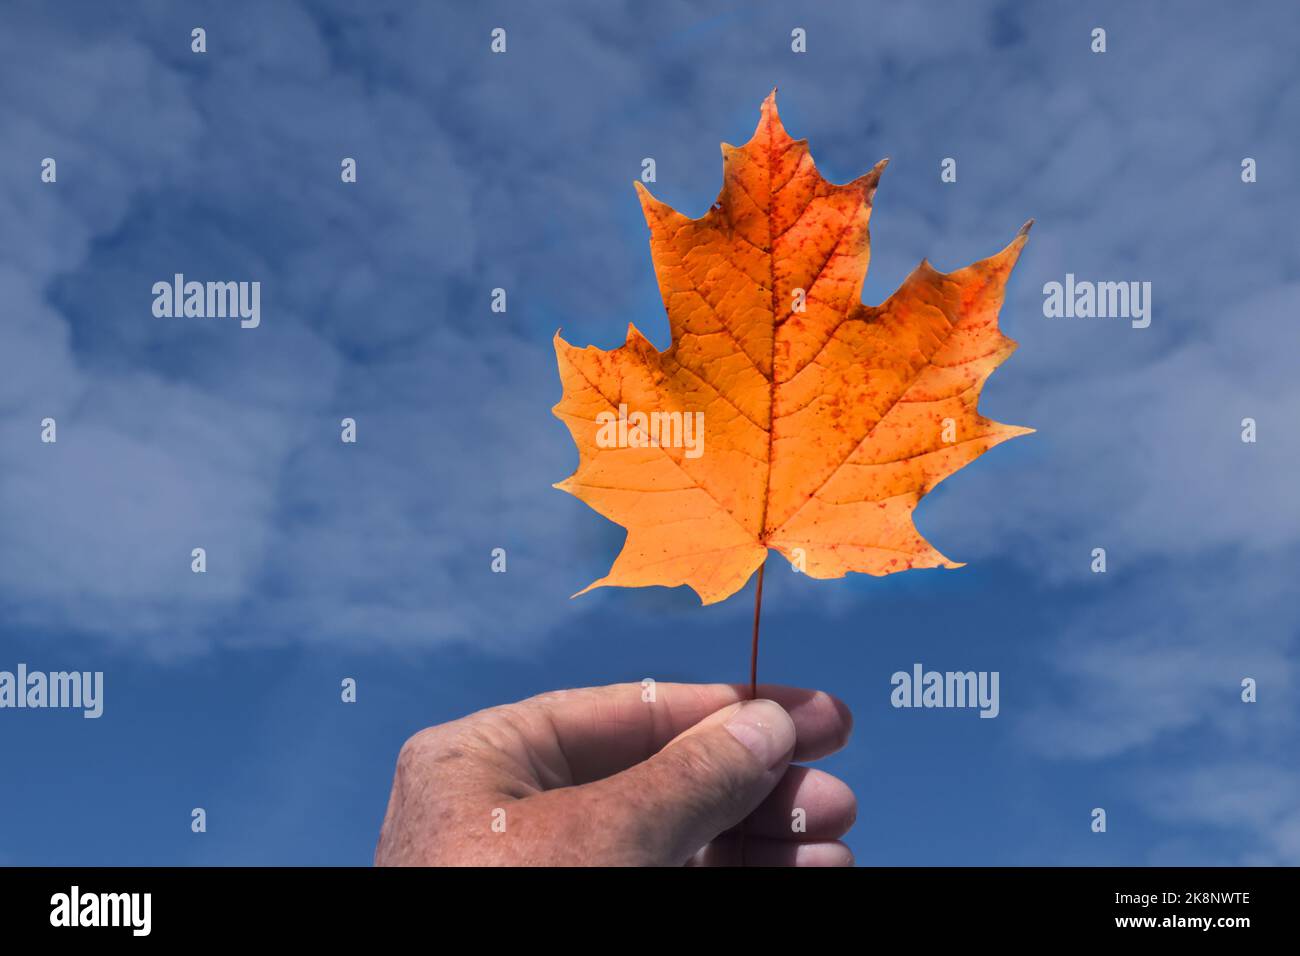 Finger holding stem of leaves against fall sky Stock Photo